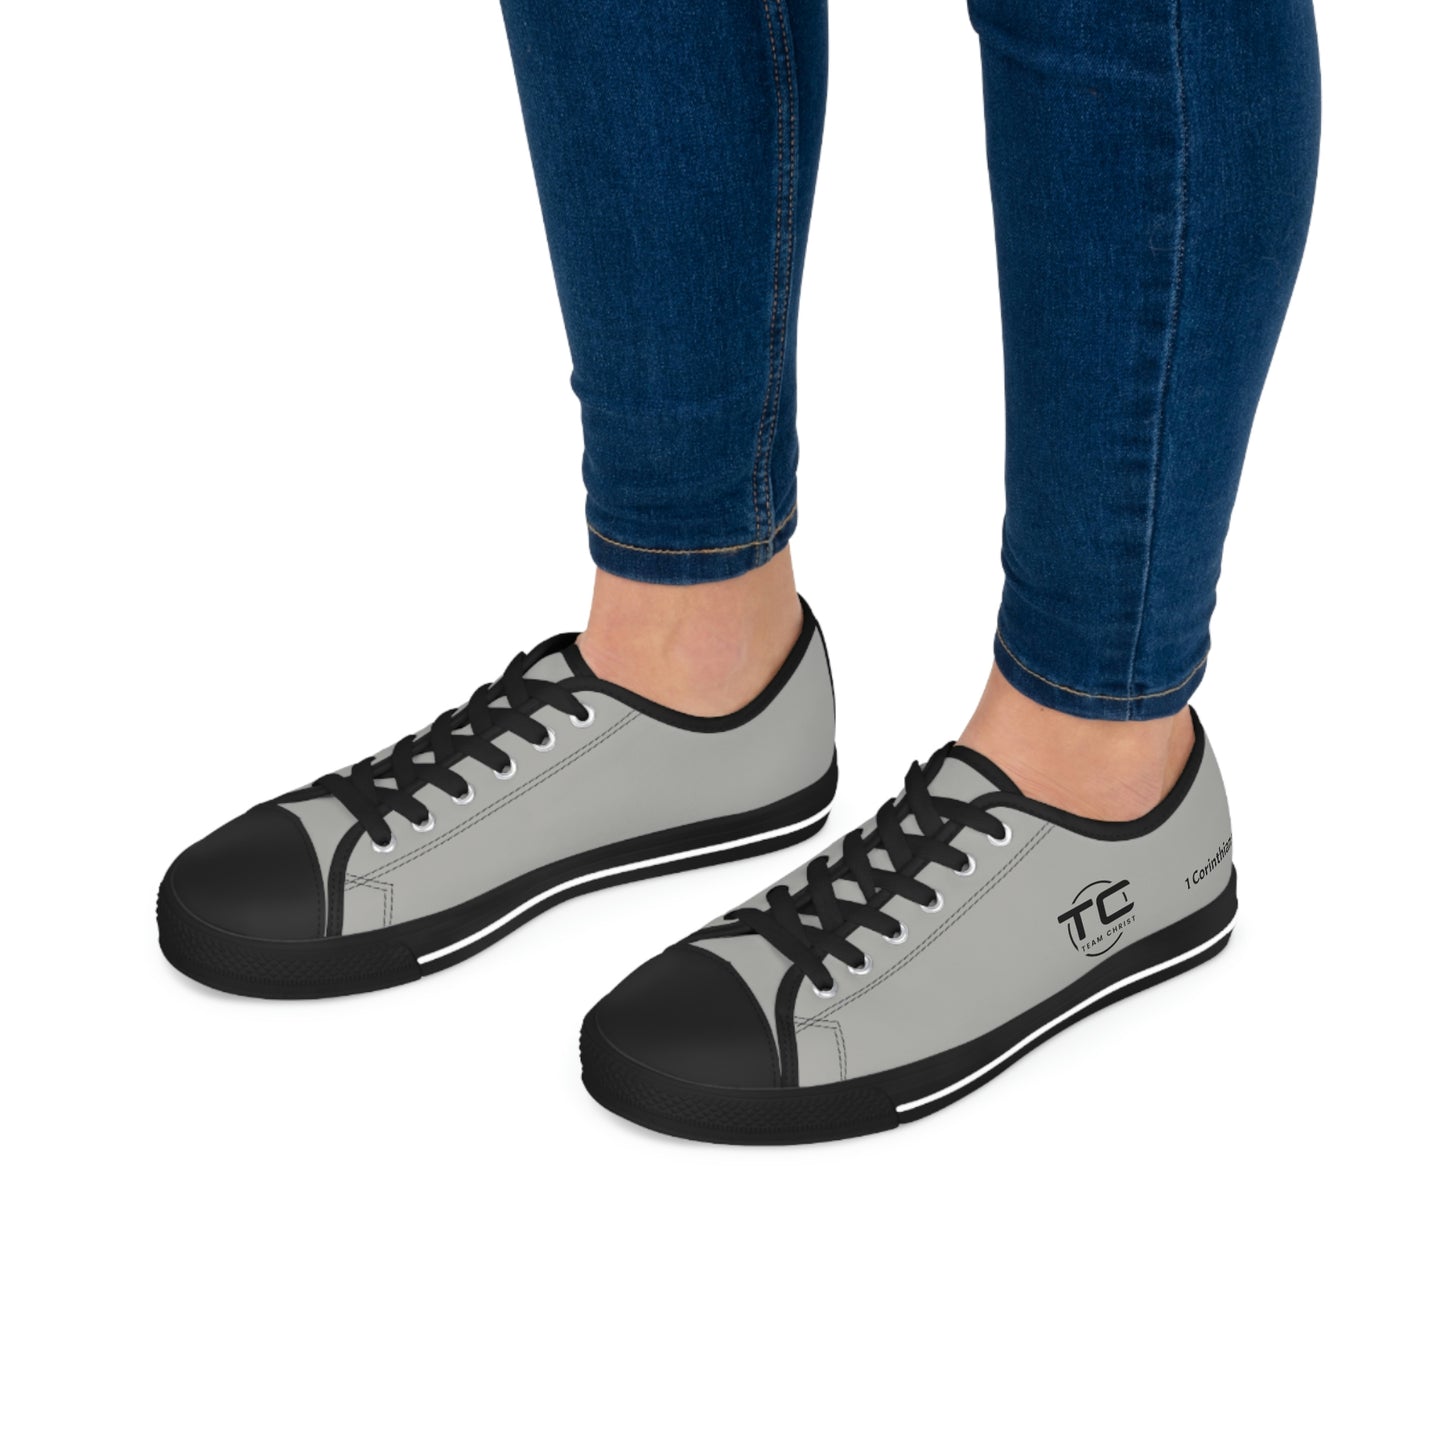 Women's Grey Low Top Sneakers